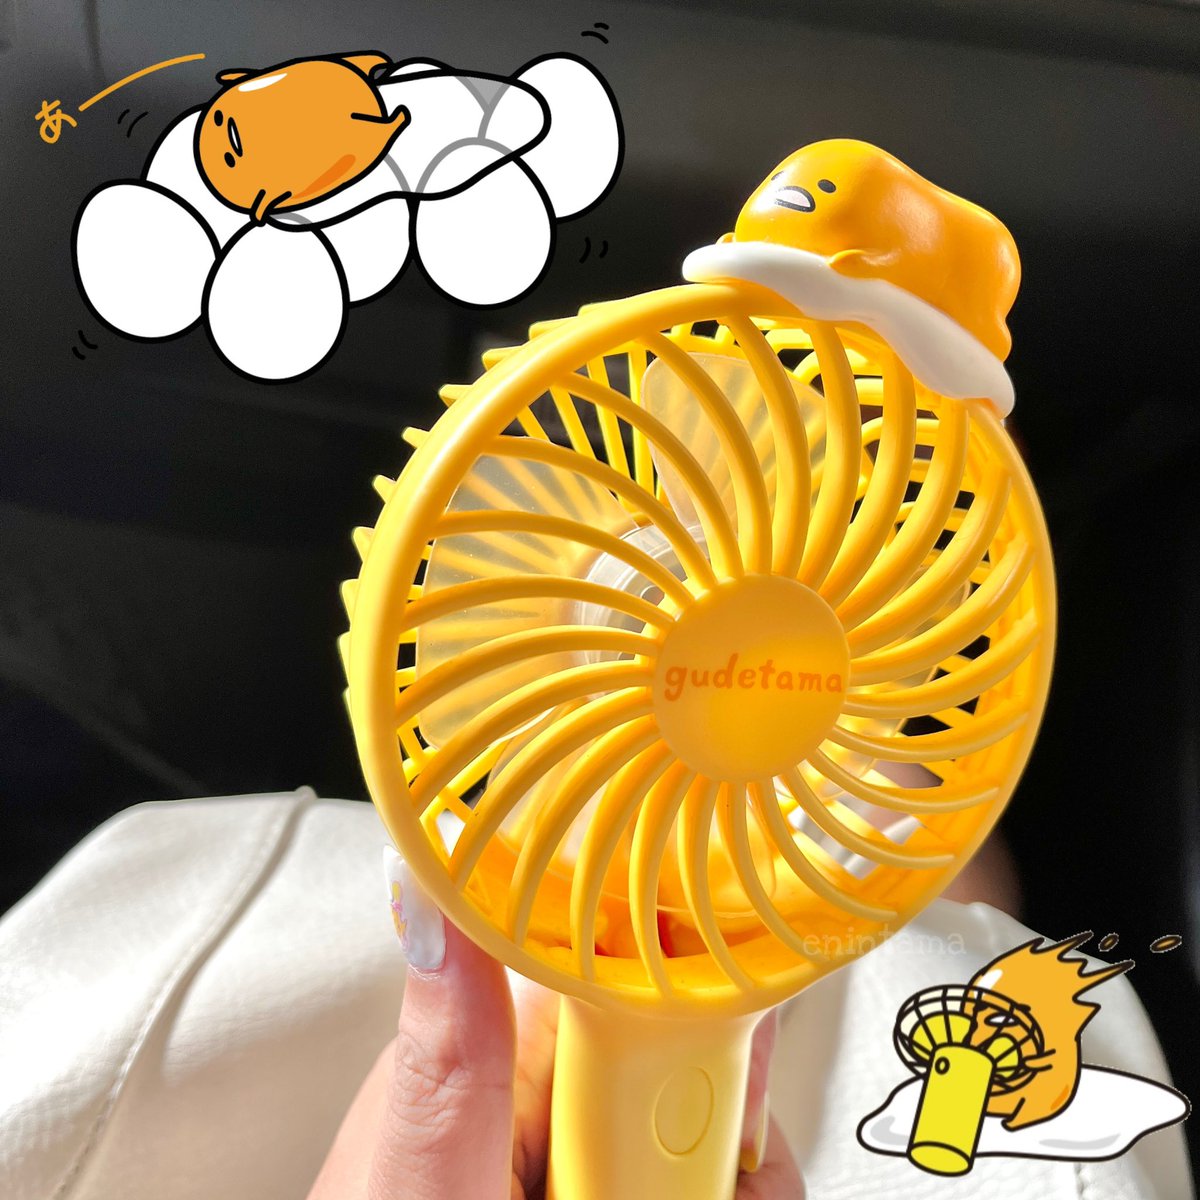 It’s so hot outside, I brought my gudetama fan 💛